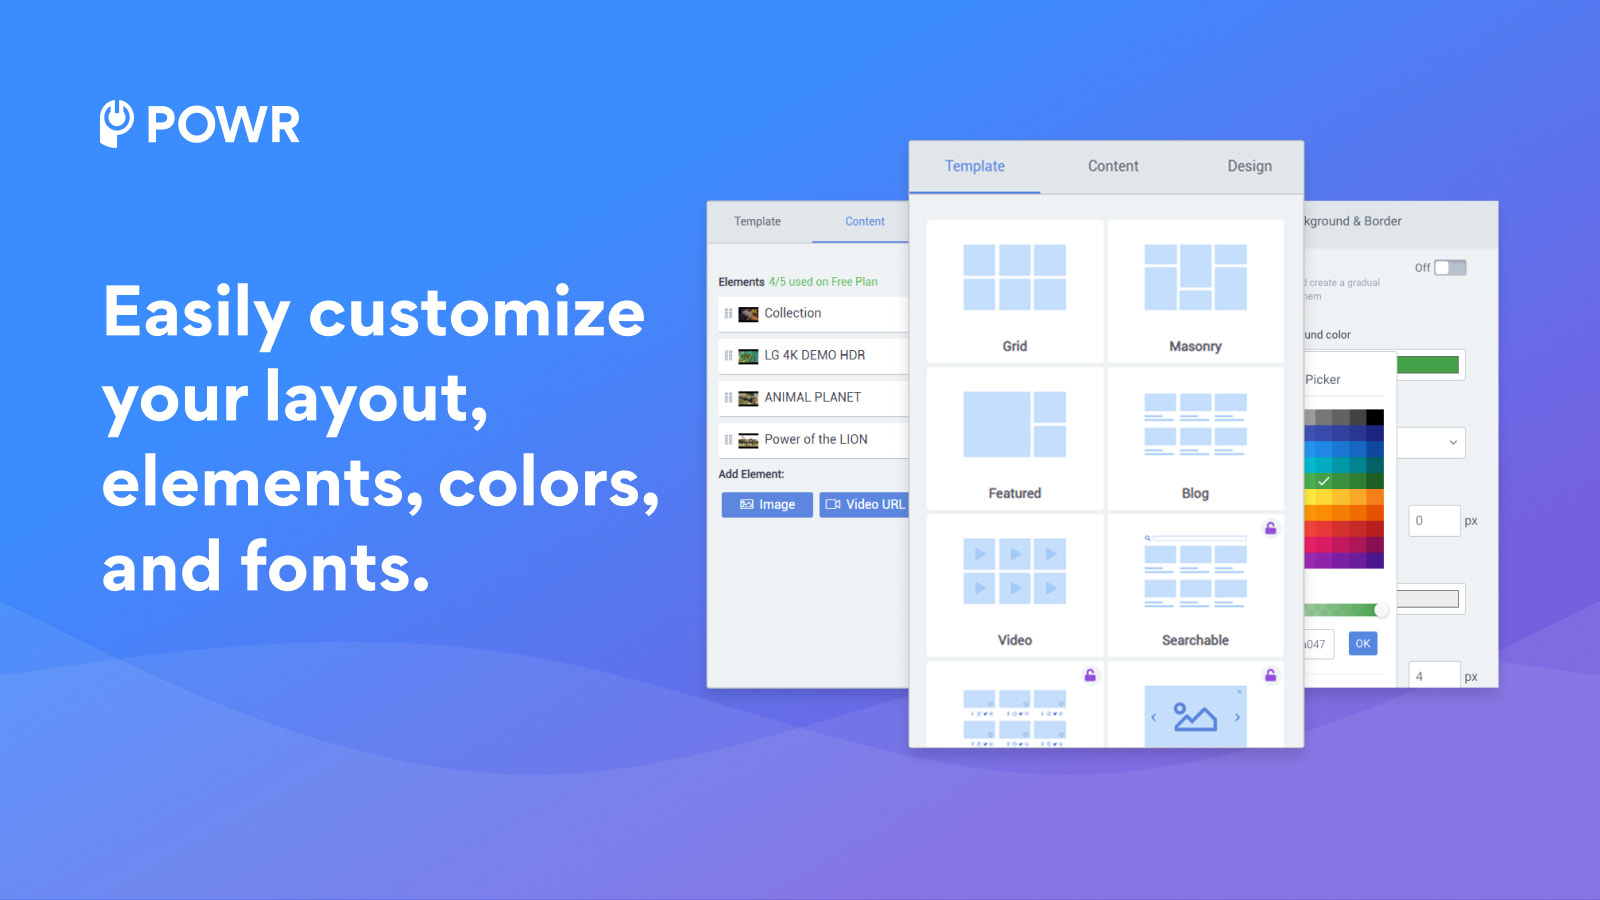 Anpassa enkelt din layout, element, färger och teckensnitt.